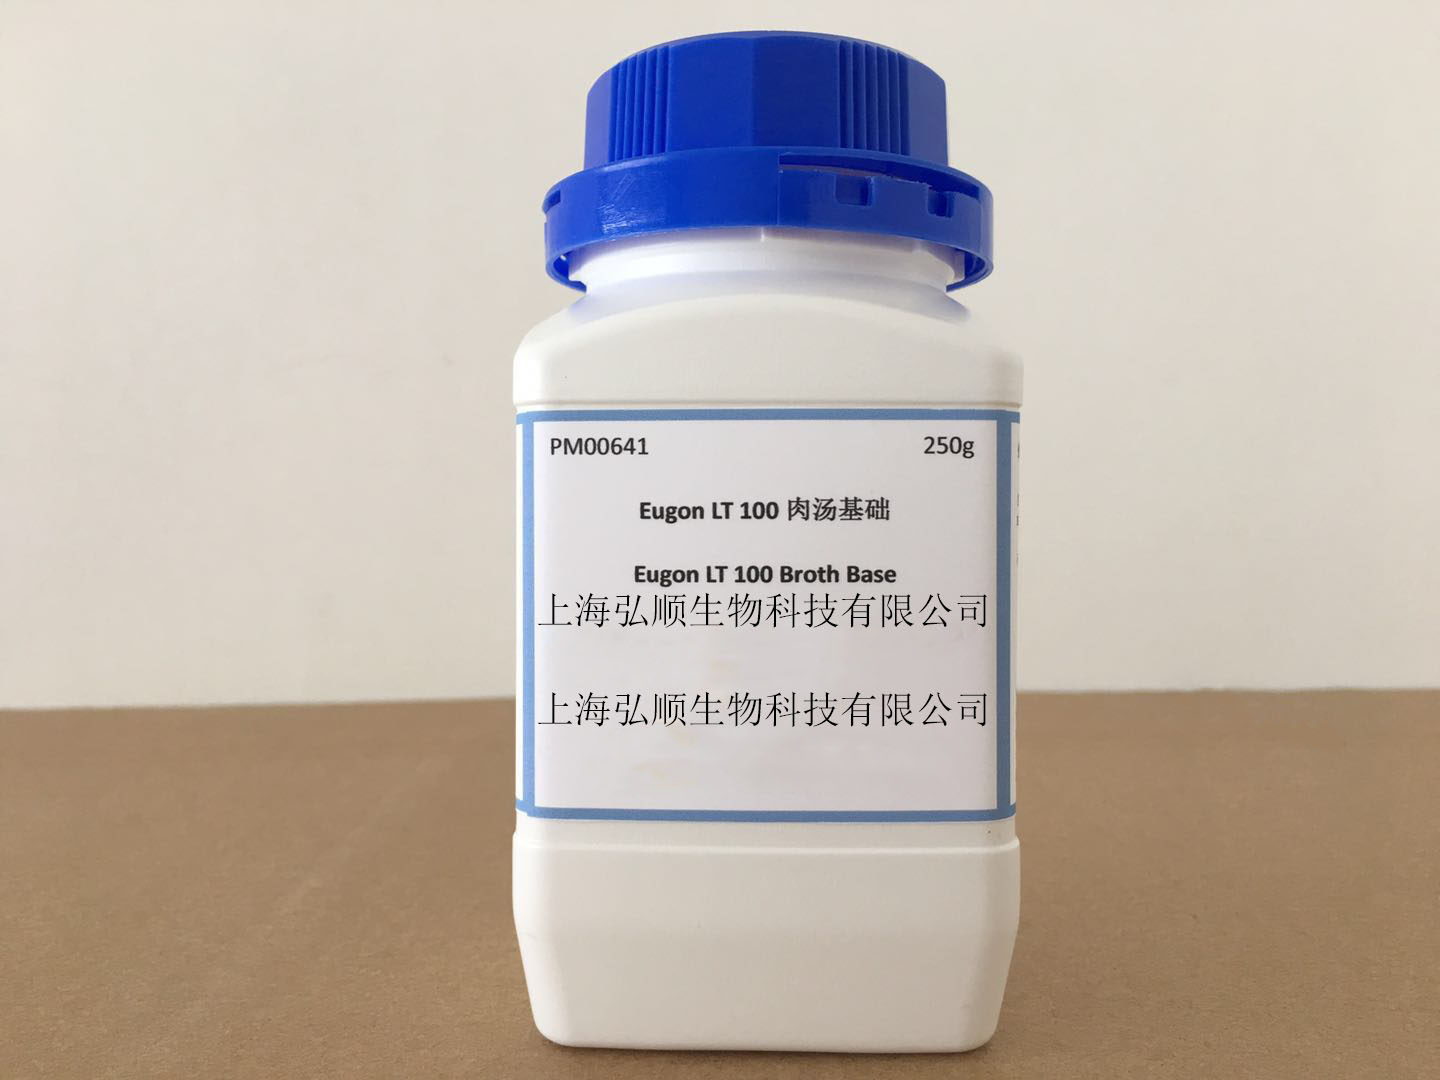 硫乙醇酸盐流体培养基 ：Fluid Thioglycollate Medium,Fluid Thioglycollate Medium